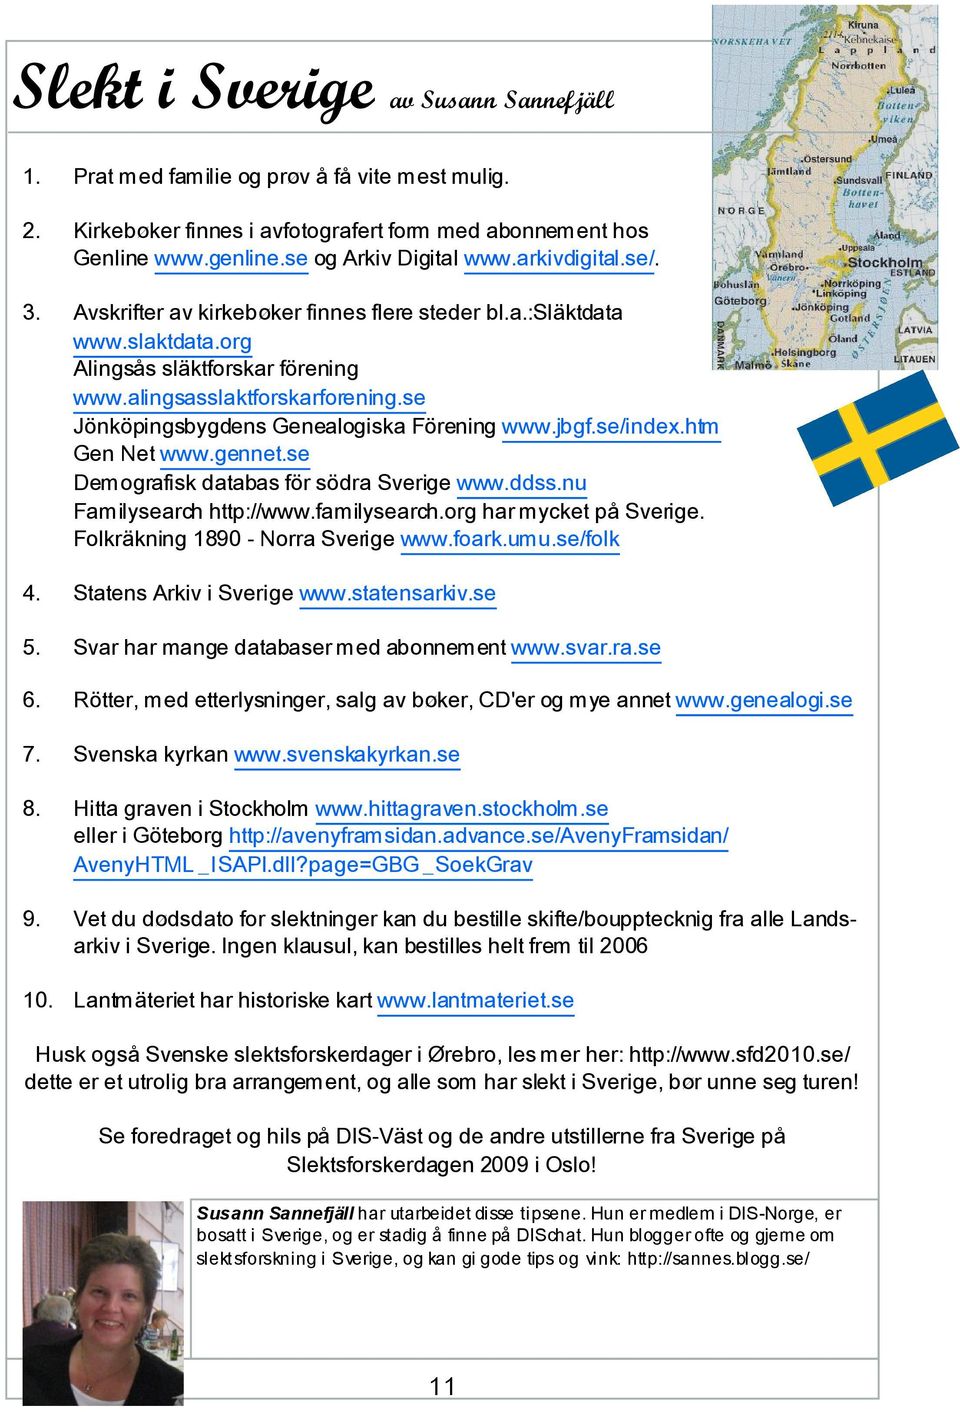 se Jönköpingsbygdens Genealogiska Förening www.jbgf.se/index.htm Gen Net www.gennet.se Demografisk databas för södra Sverige www.ddss.nu Familysearch http://www.familysearch.org har mycket på Sverige.